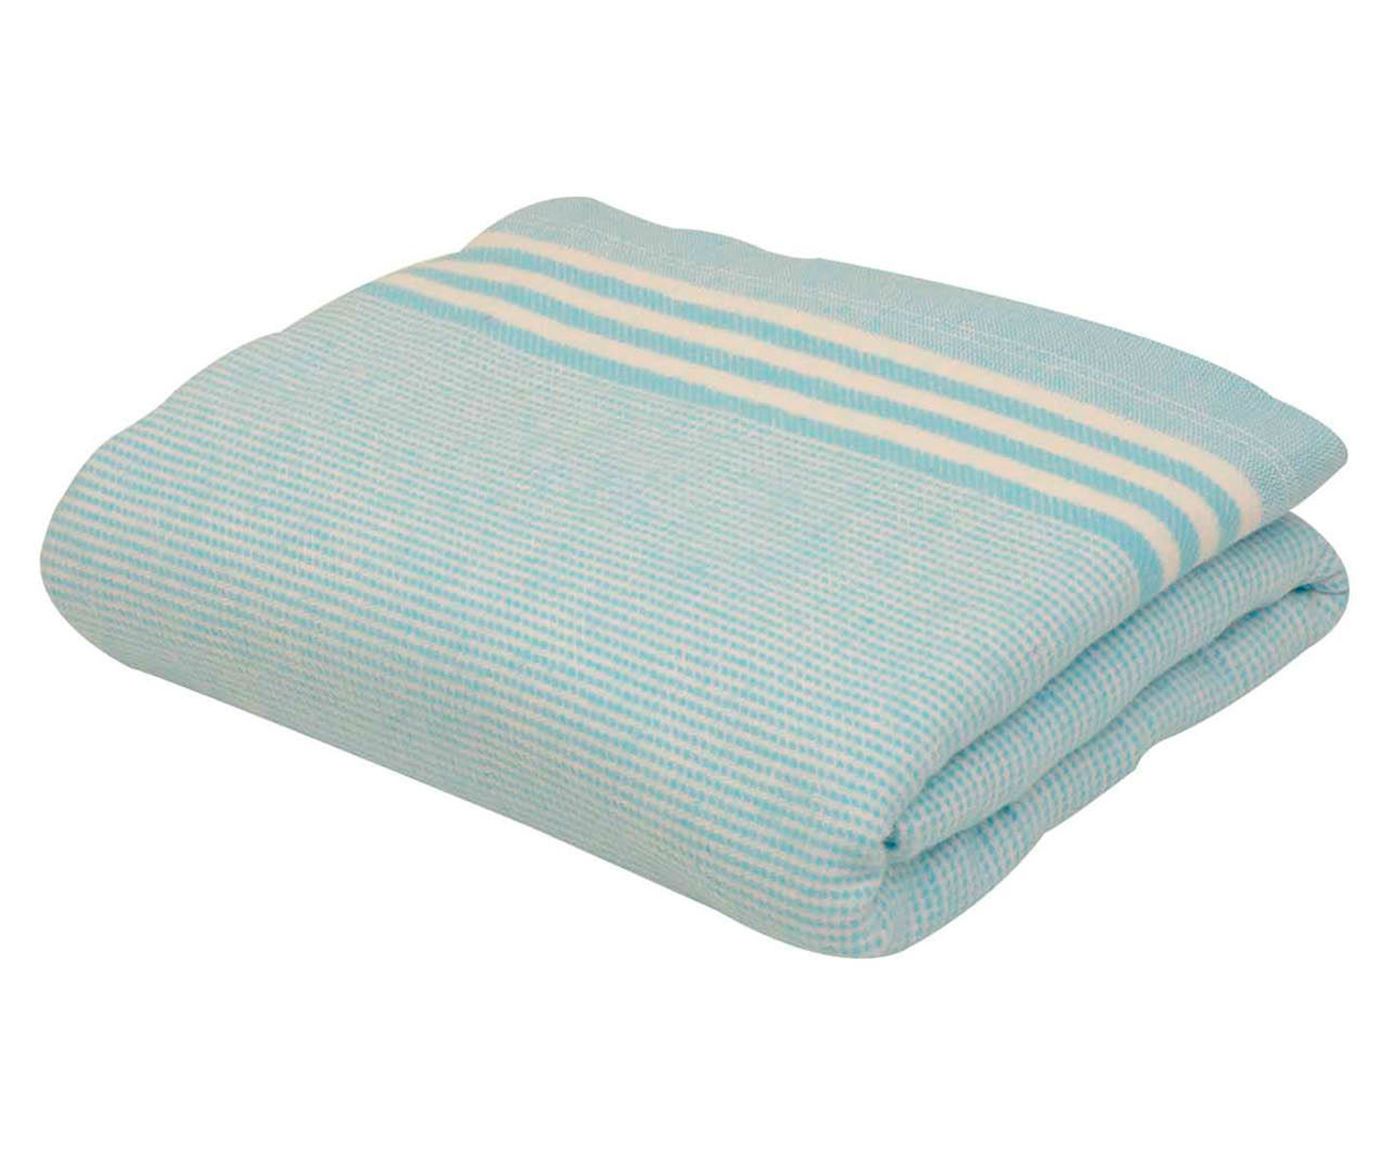 Cobertor talisman zen - para cama de solteiro | Westwing.com.br